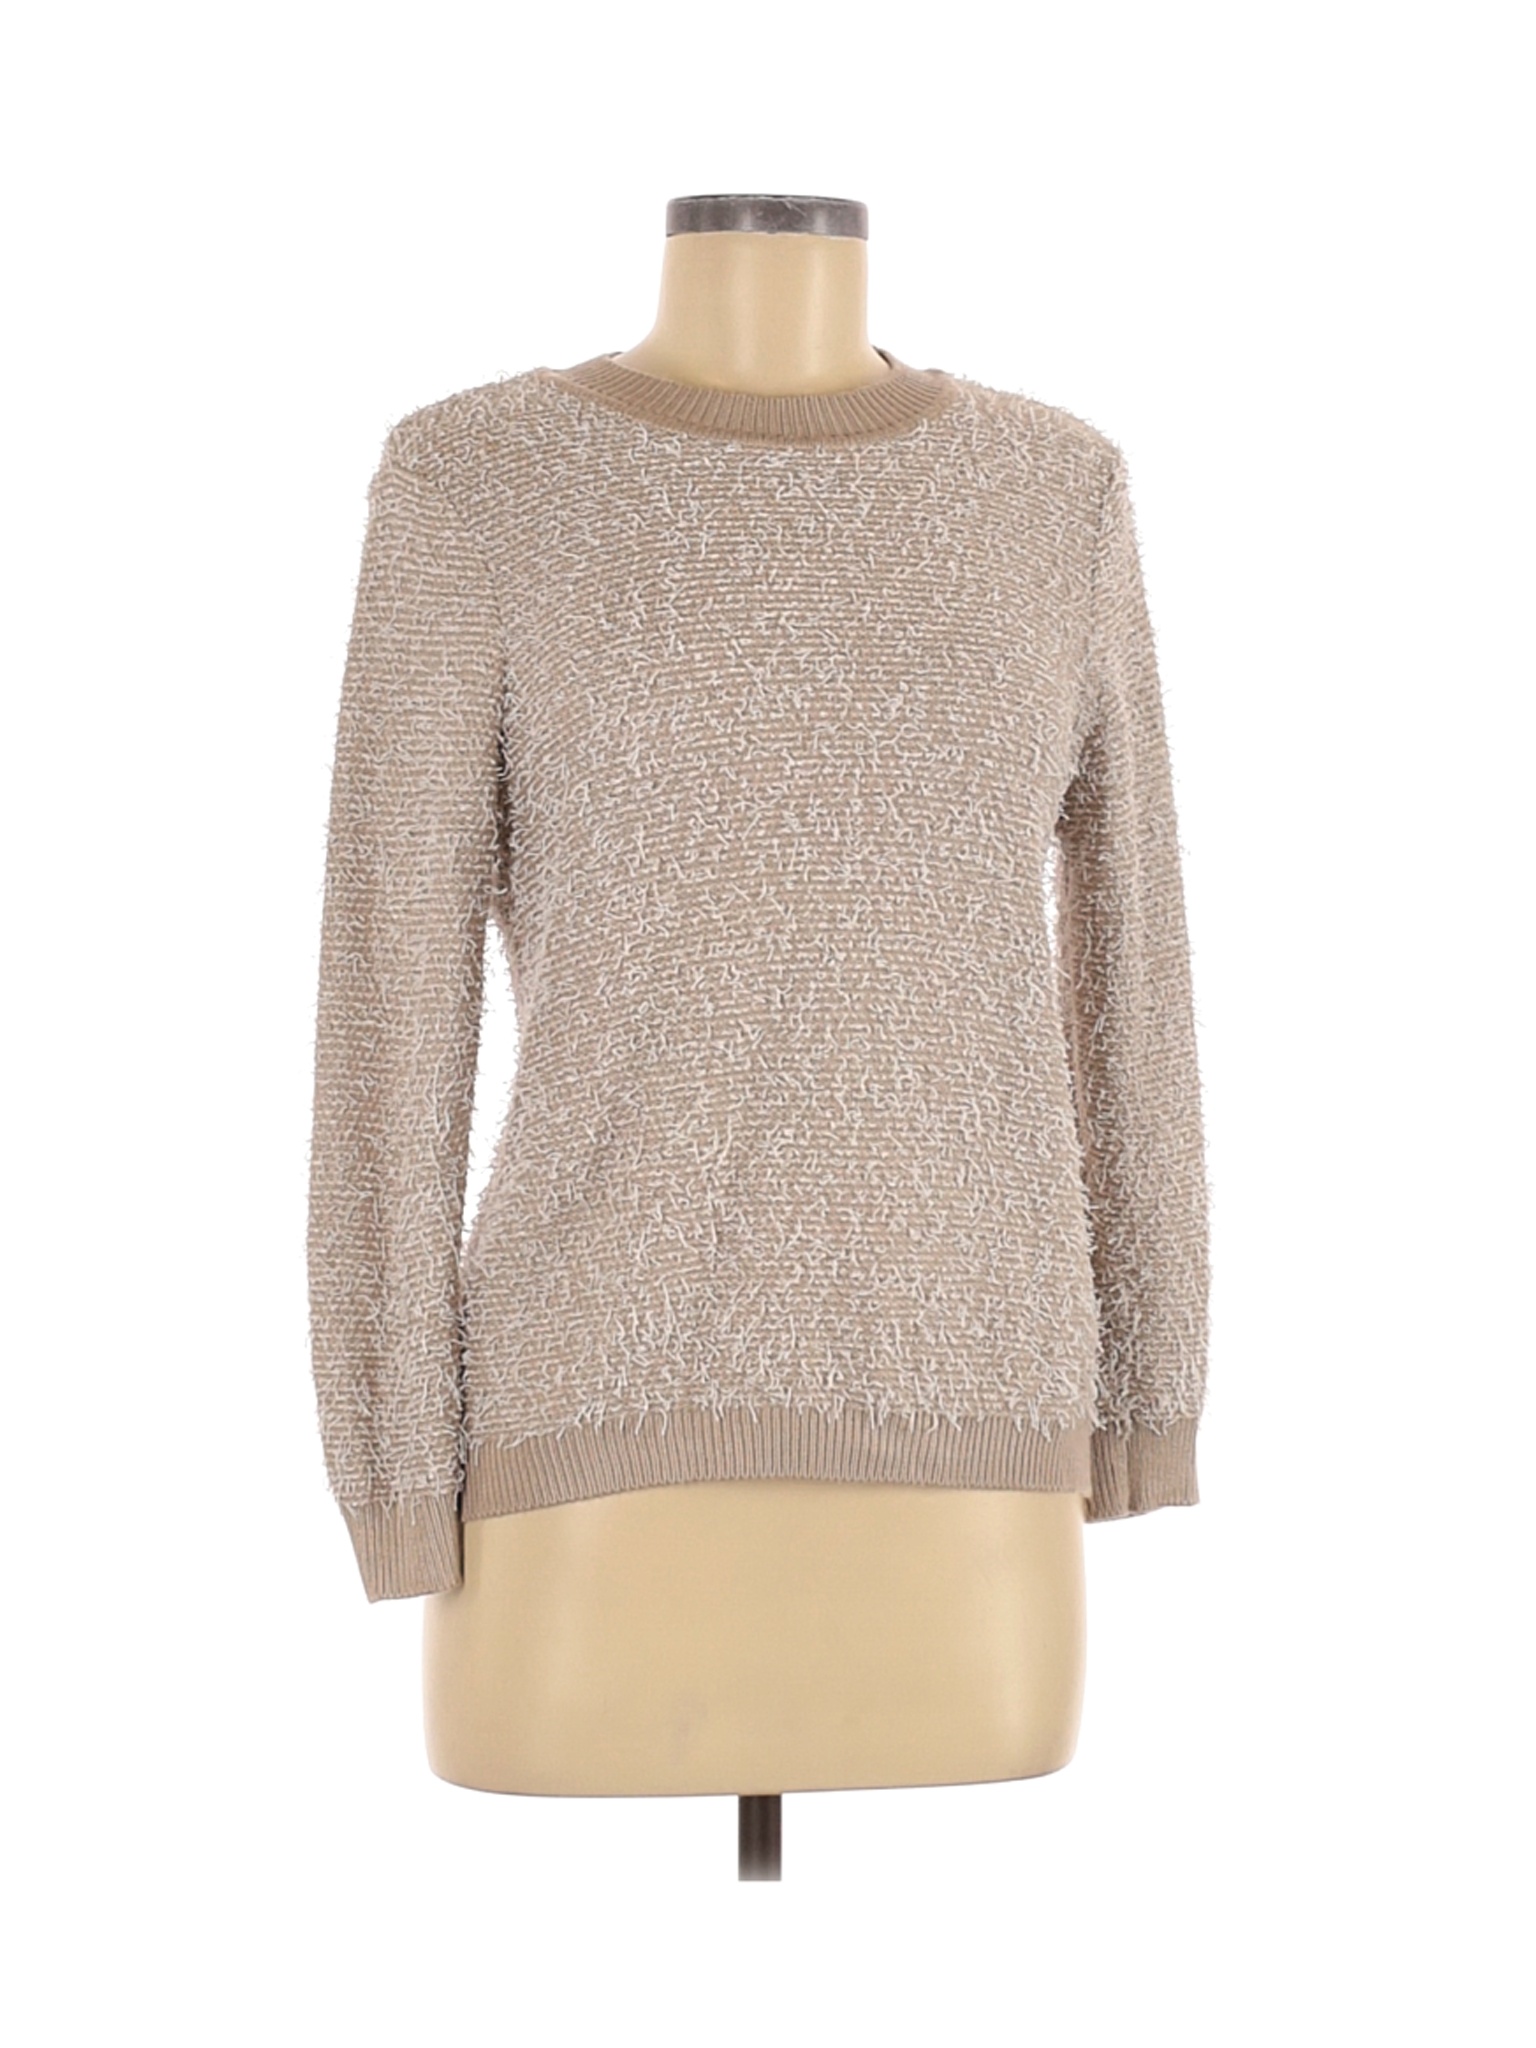 Calvin Klein Women Brown Pullover Sweater M | eBay